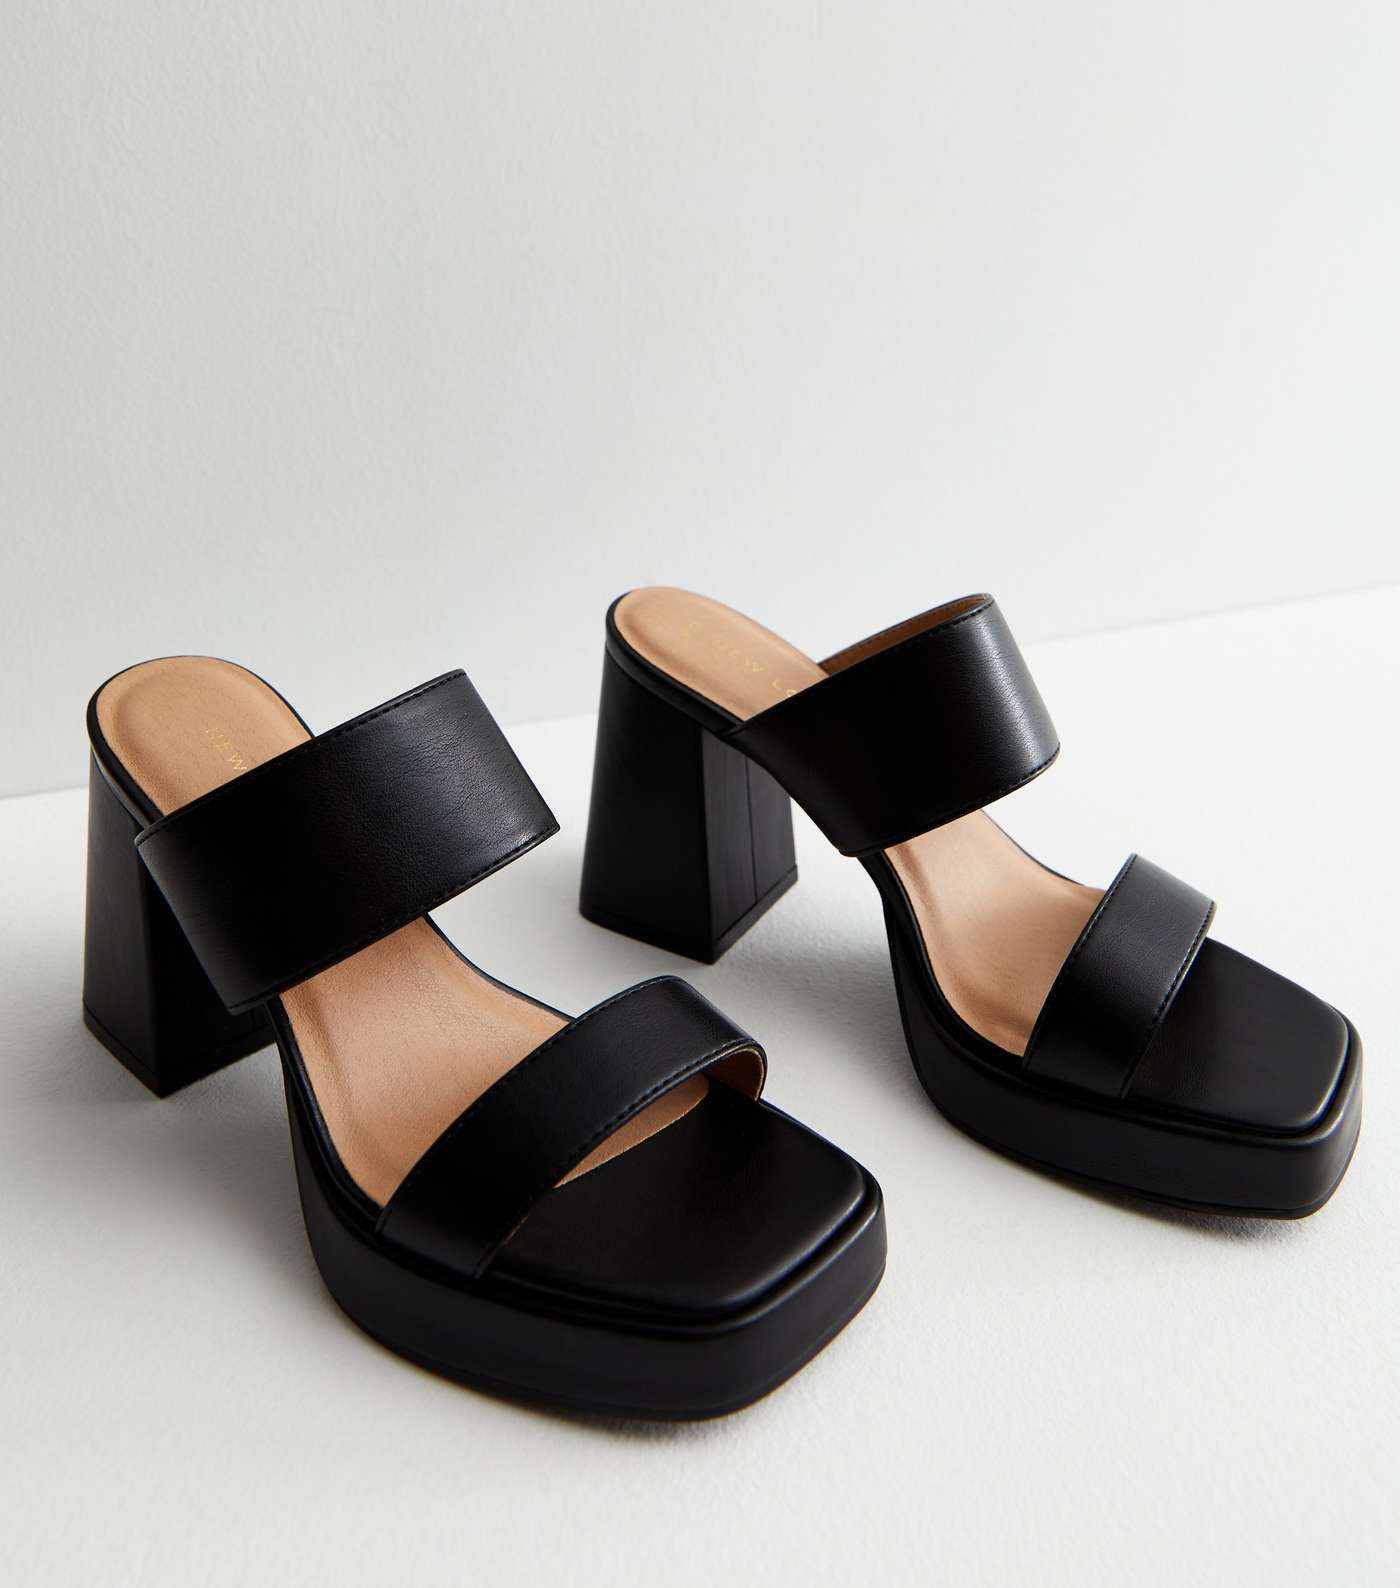 Black Leather-Look Platform Block Heel Mule Sandals Image 3